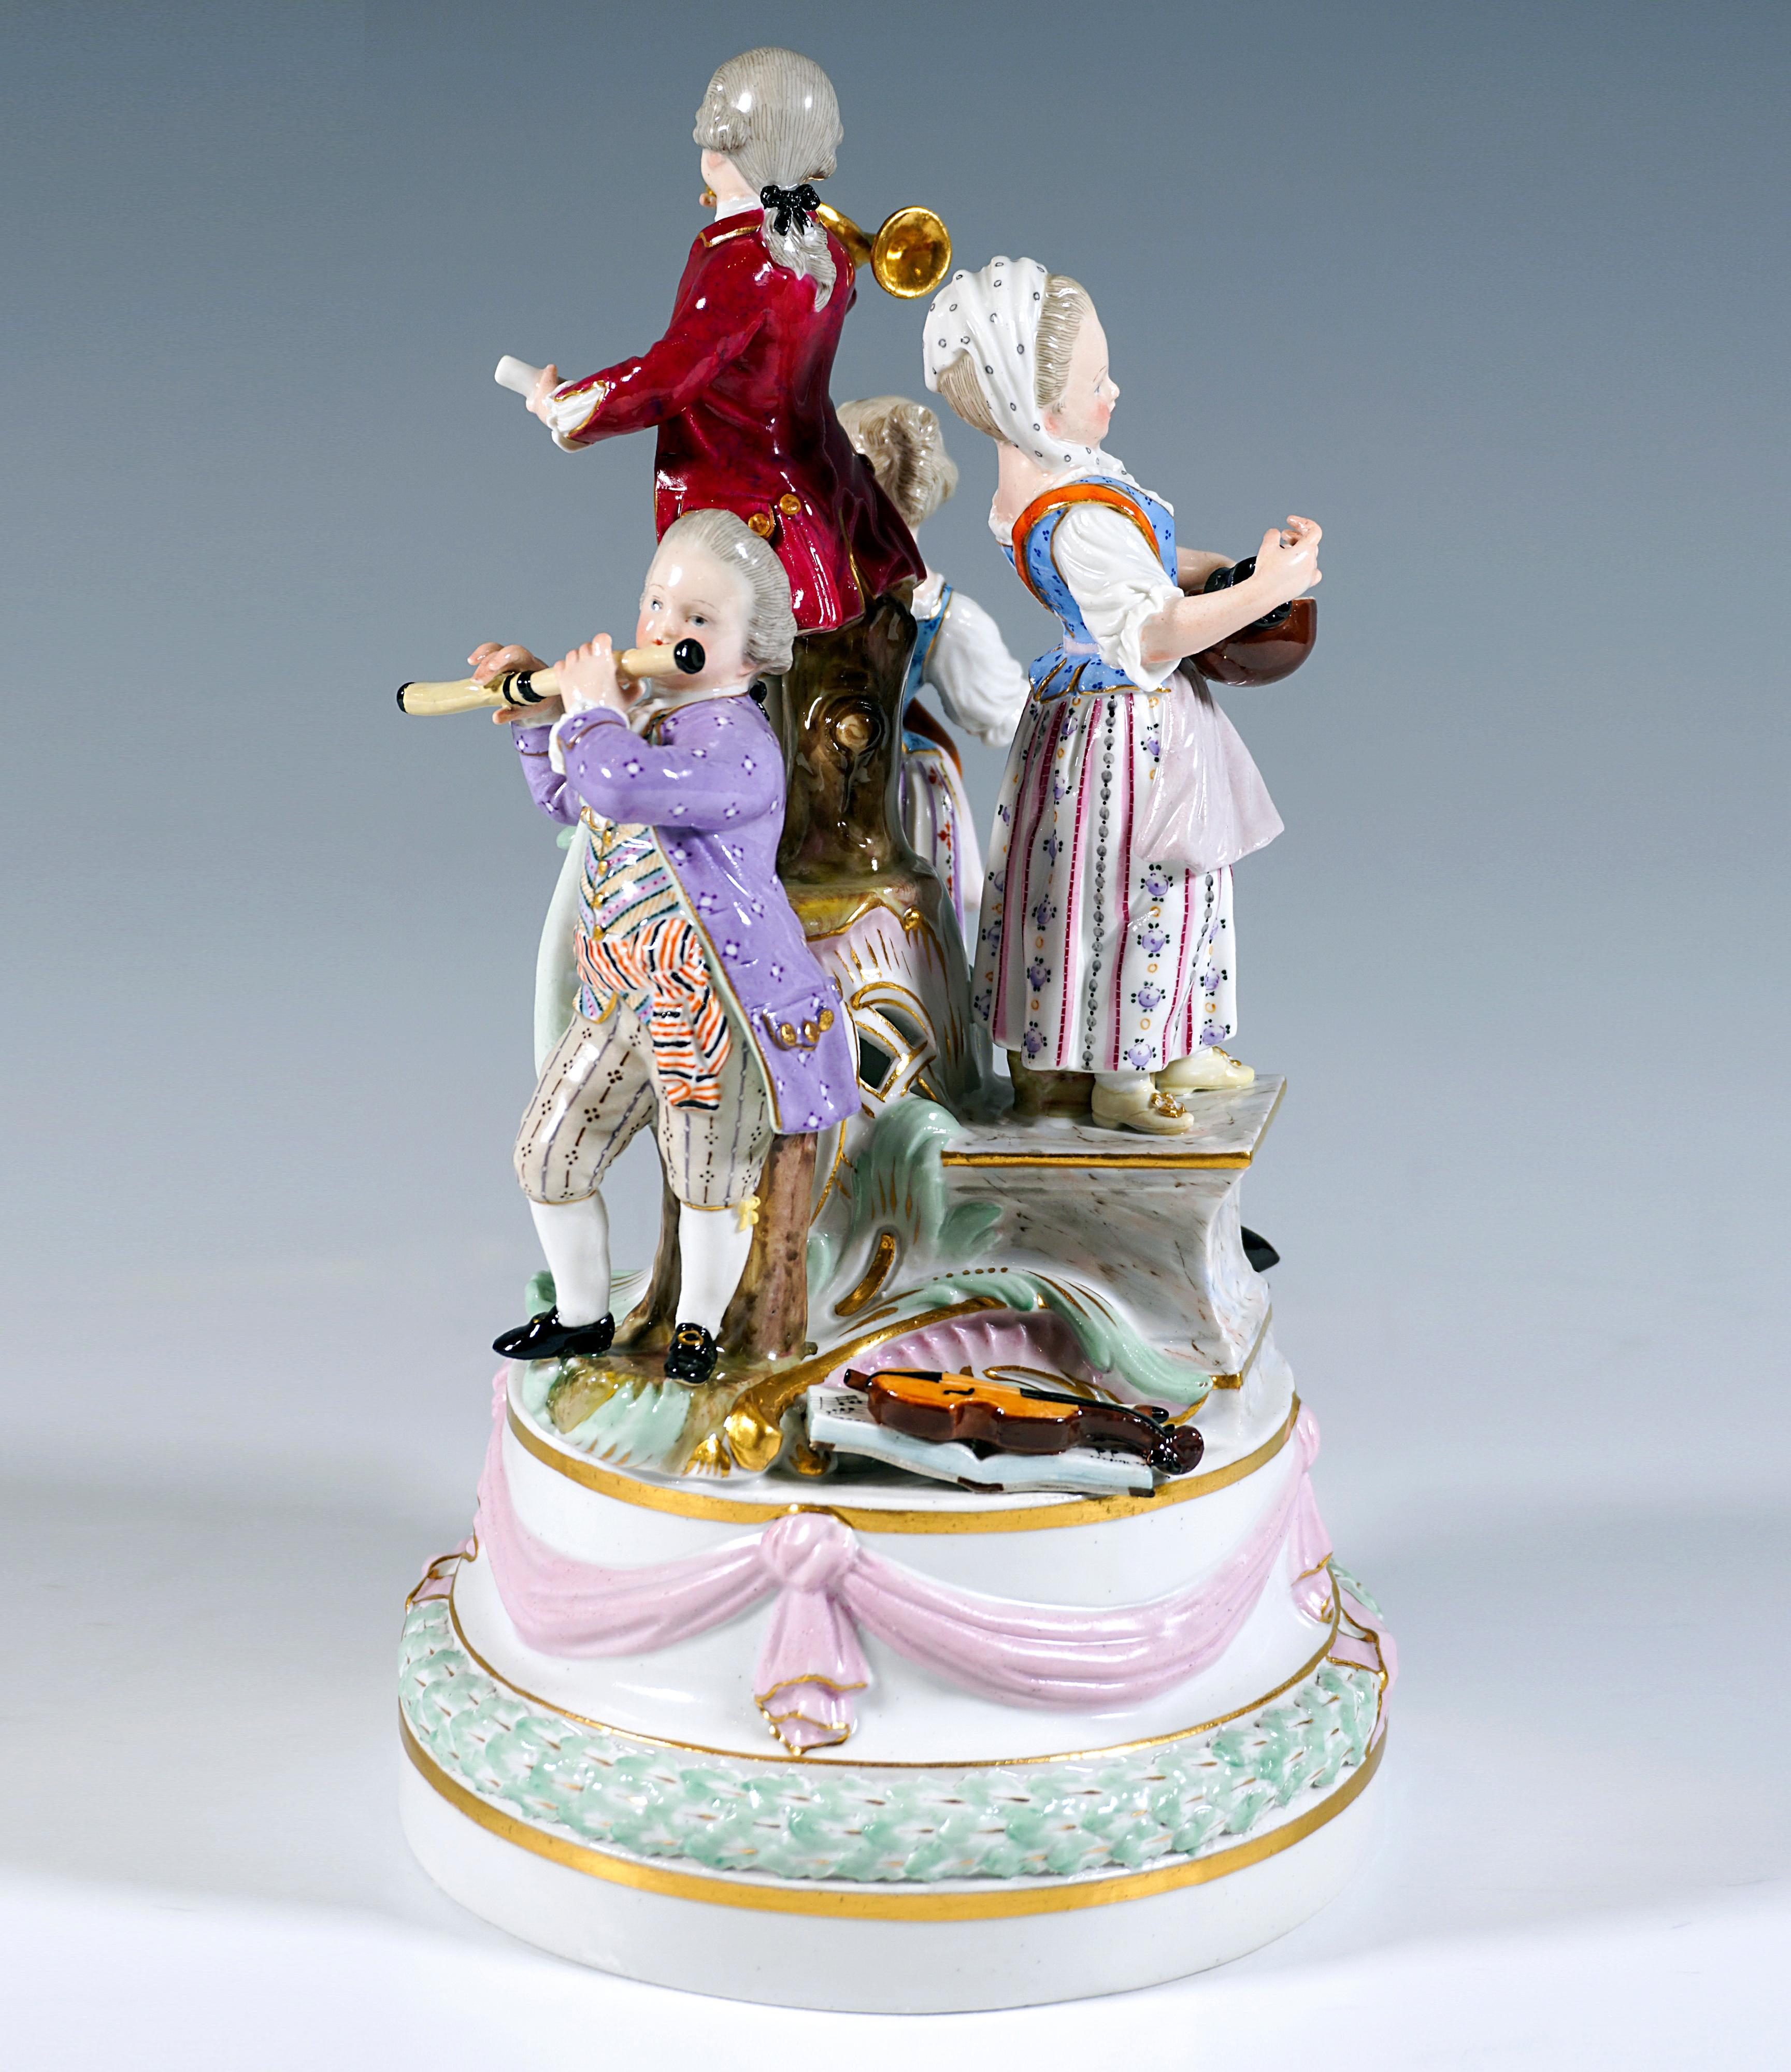 Excellente pièce de Meissen de l'époque où le modèle a été créé :
Quatre enfants en habits de fête rococo rural sur un haut piédestal rond à gradins, décoré d'une couronne de feuilles et d'un feston de nœuds avec ornementation dorée, sur le